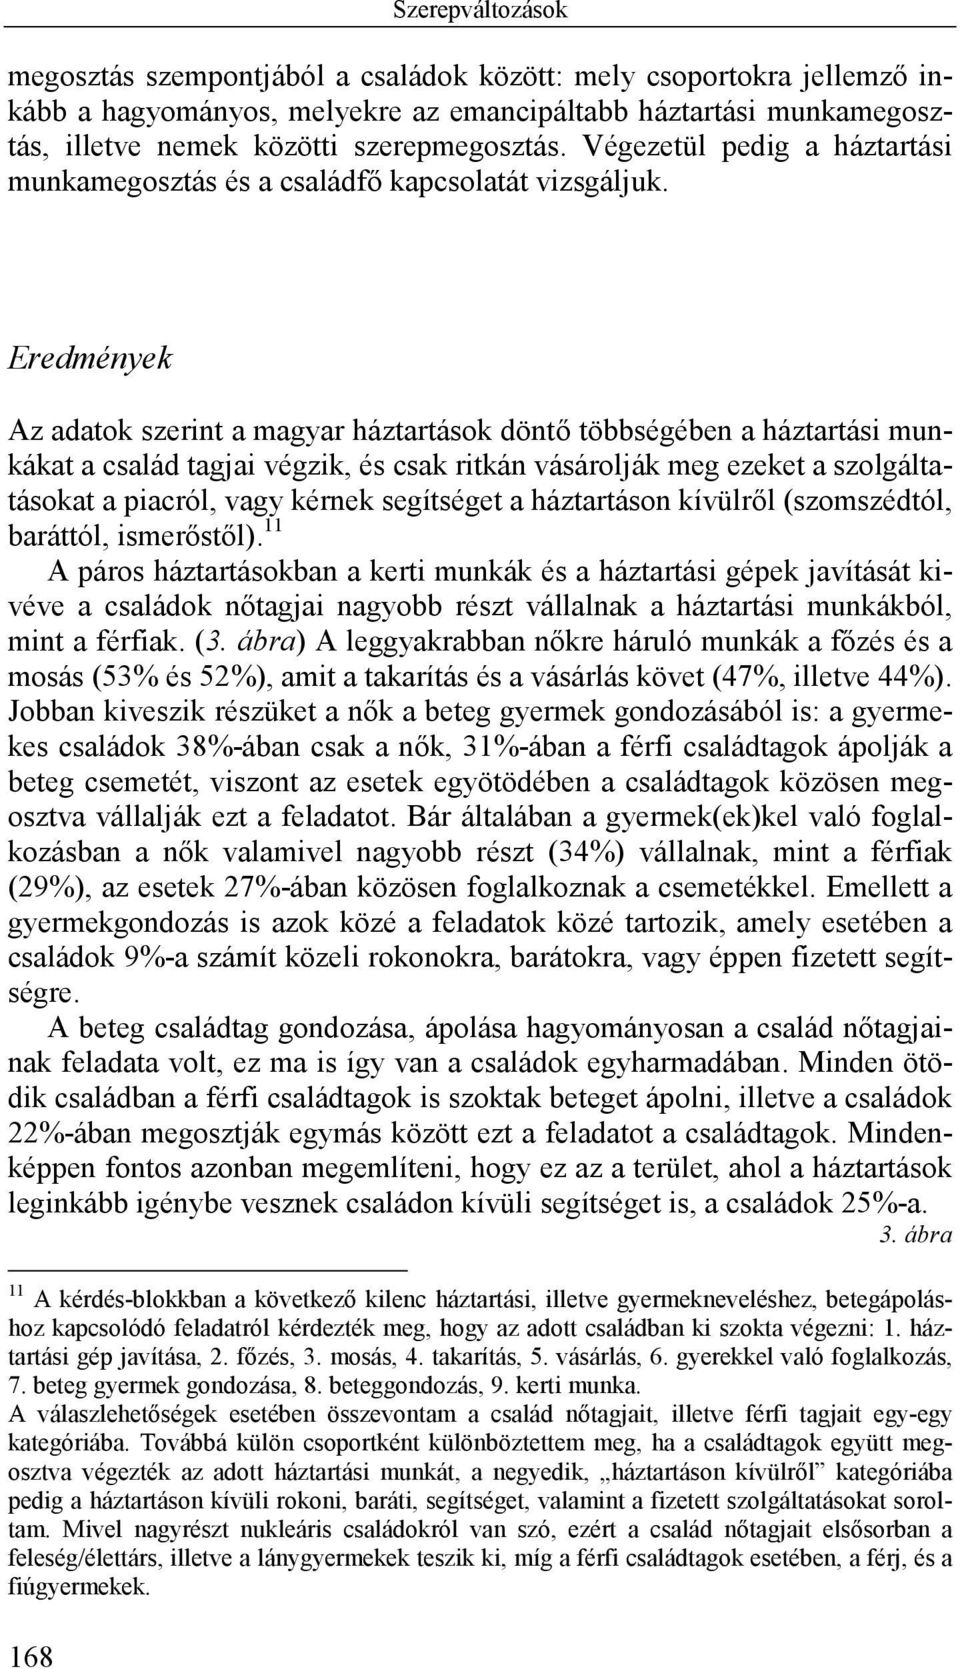 Eredmények Az adatok szerint a magyar háztartások döntő többségében a háztartási munkákat a család tagjai végzik, és csak ritkán vásárolják meg ezeket a szolgáltatásokat a piacról, vagy kérnek